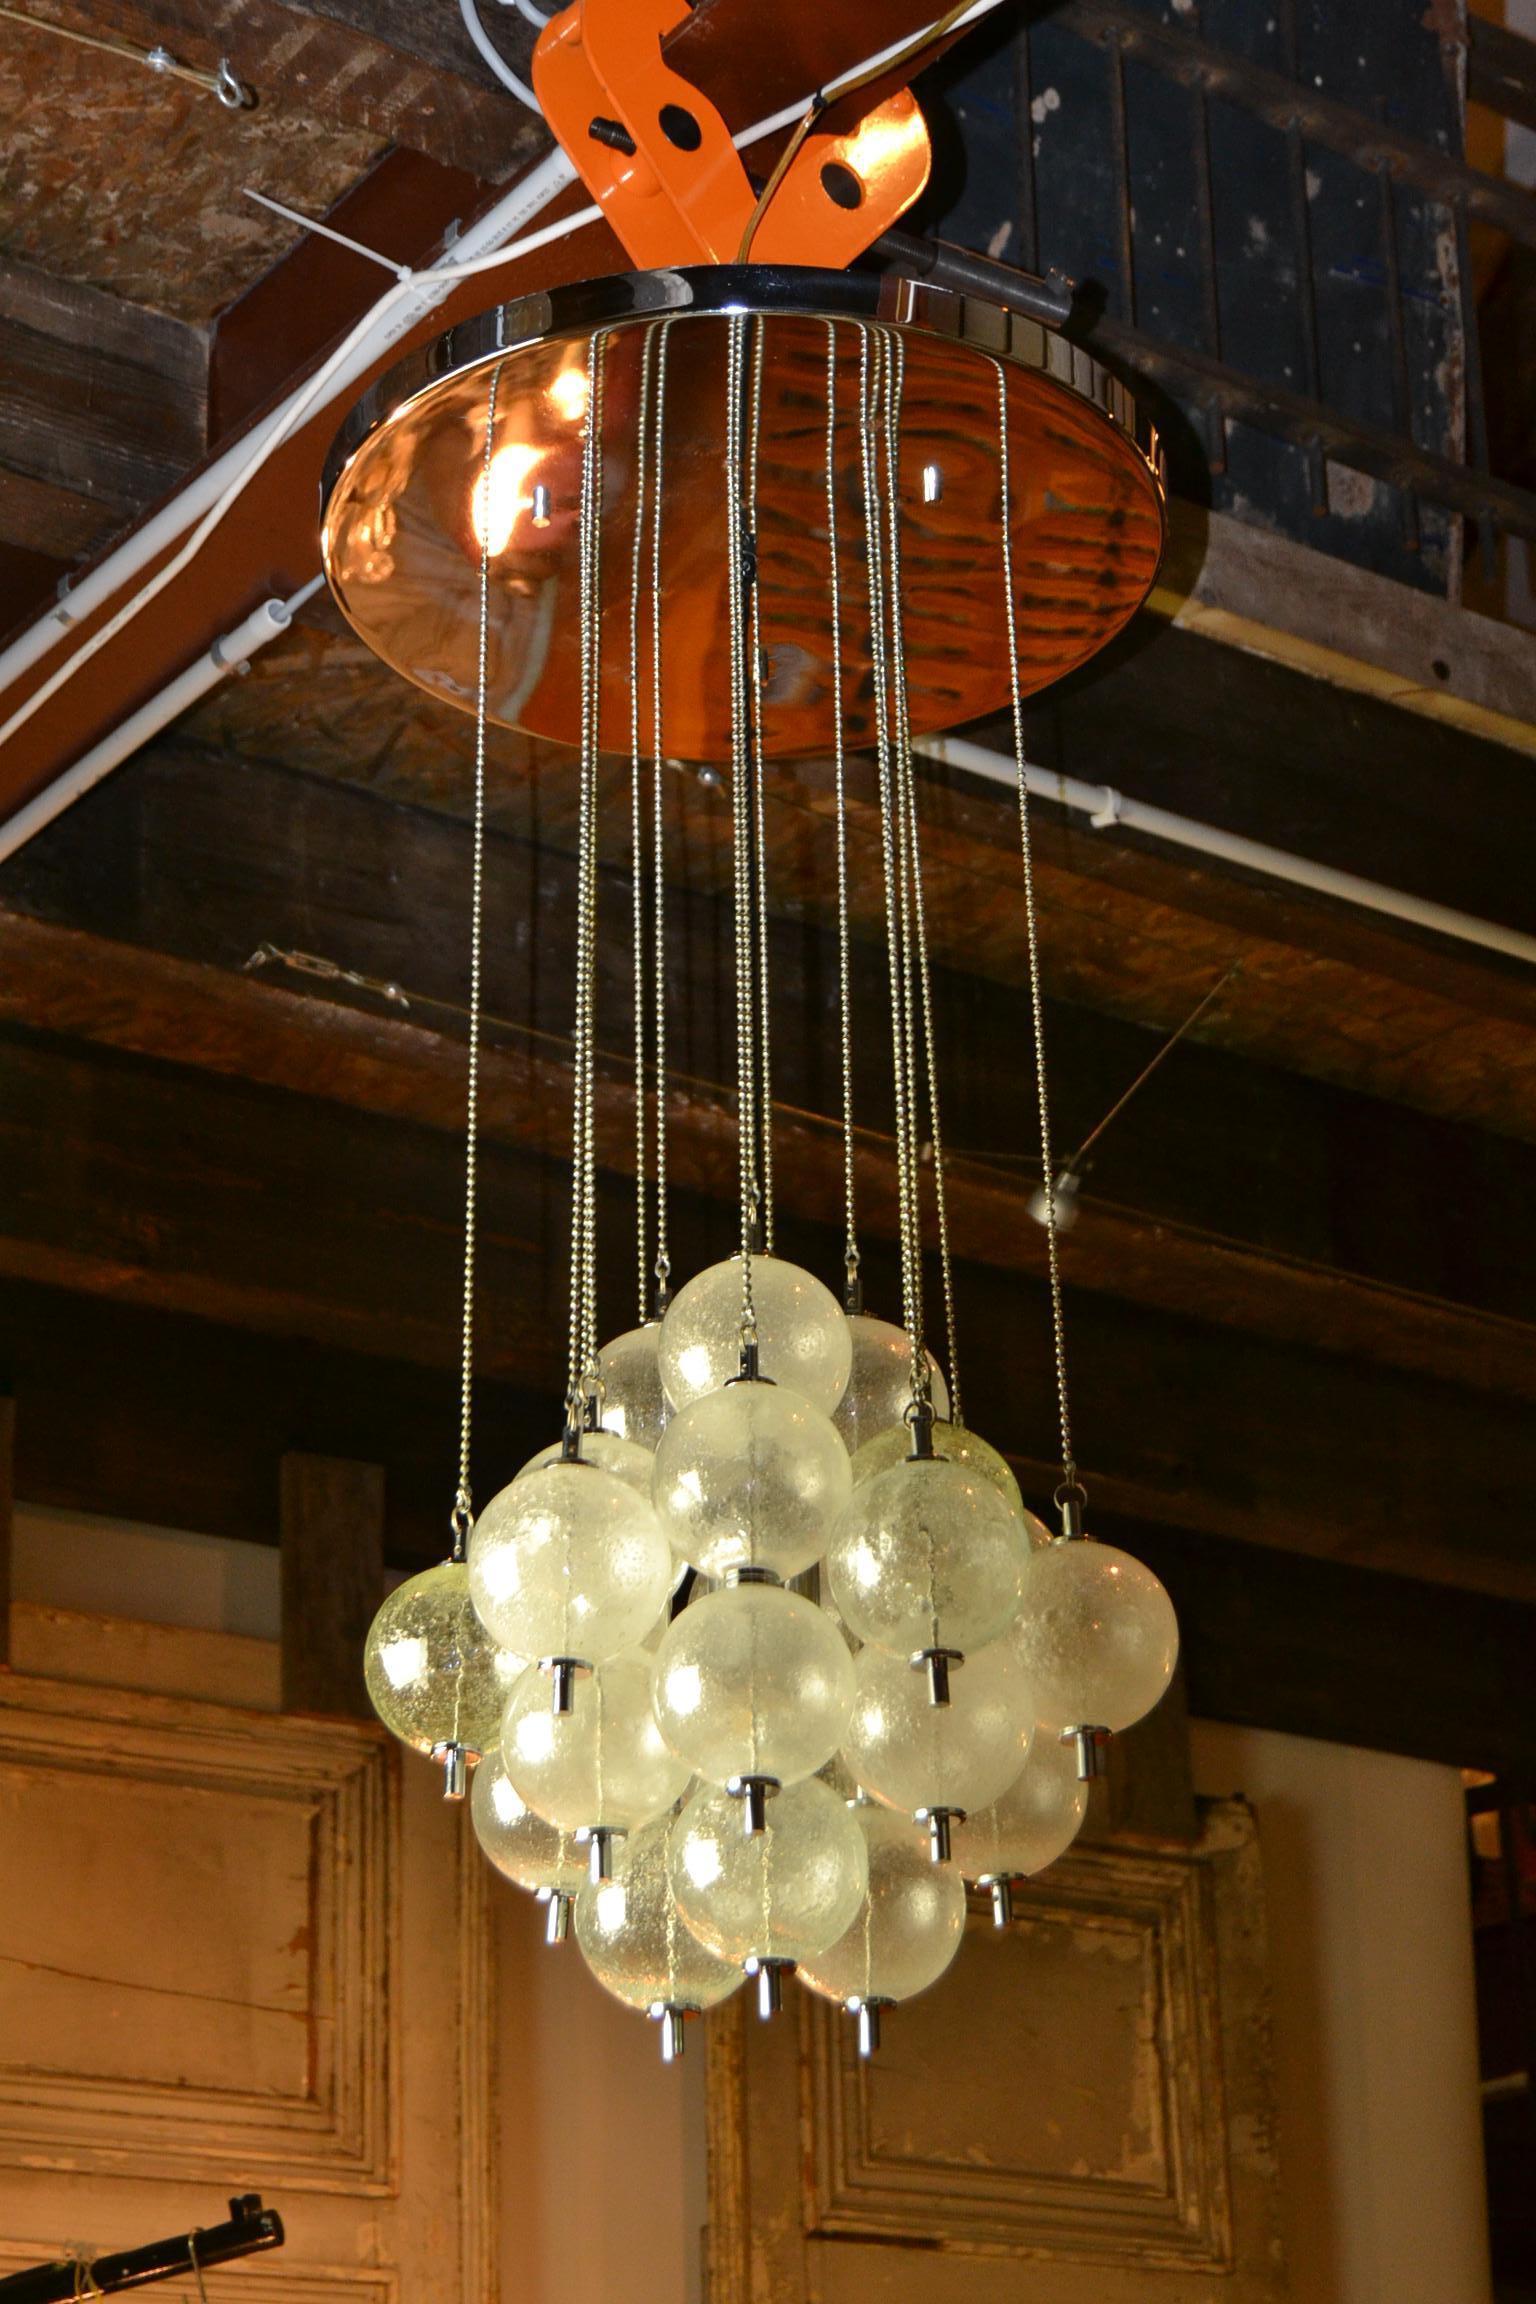 Mitte des 20. Jahrhunderts  Murano Glas Blase Kronleuchter - flush mount - Deckenleuchte .
Raak Amsterdam - Seguso Italien 
Bestehend aus einer verchromten Deckenplatte mit vielen Ketten mit Murano-Glasblasen - Glaskugeln.
In der Mitte der 24